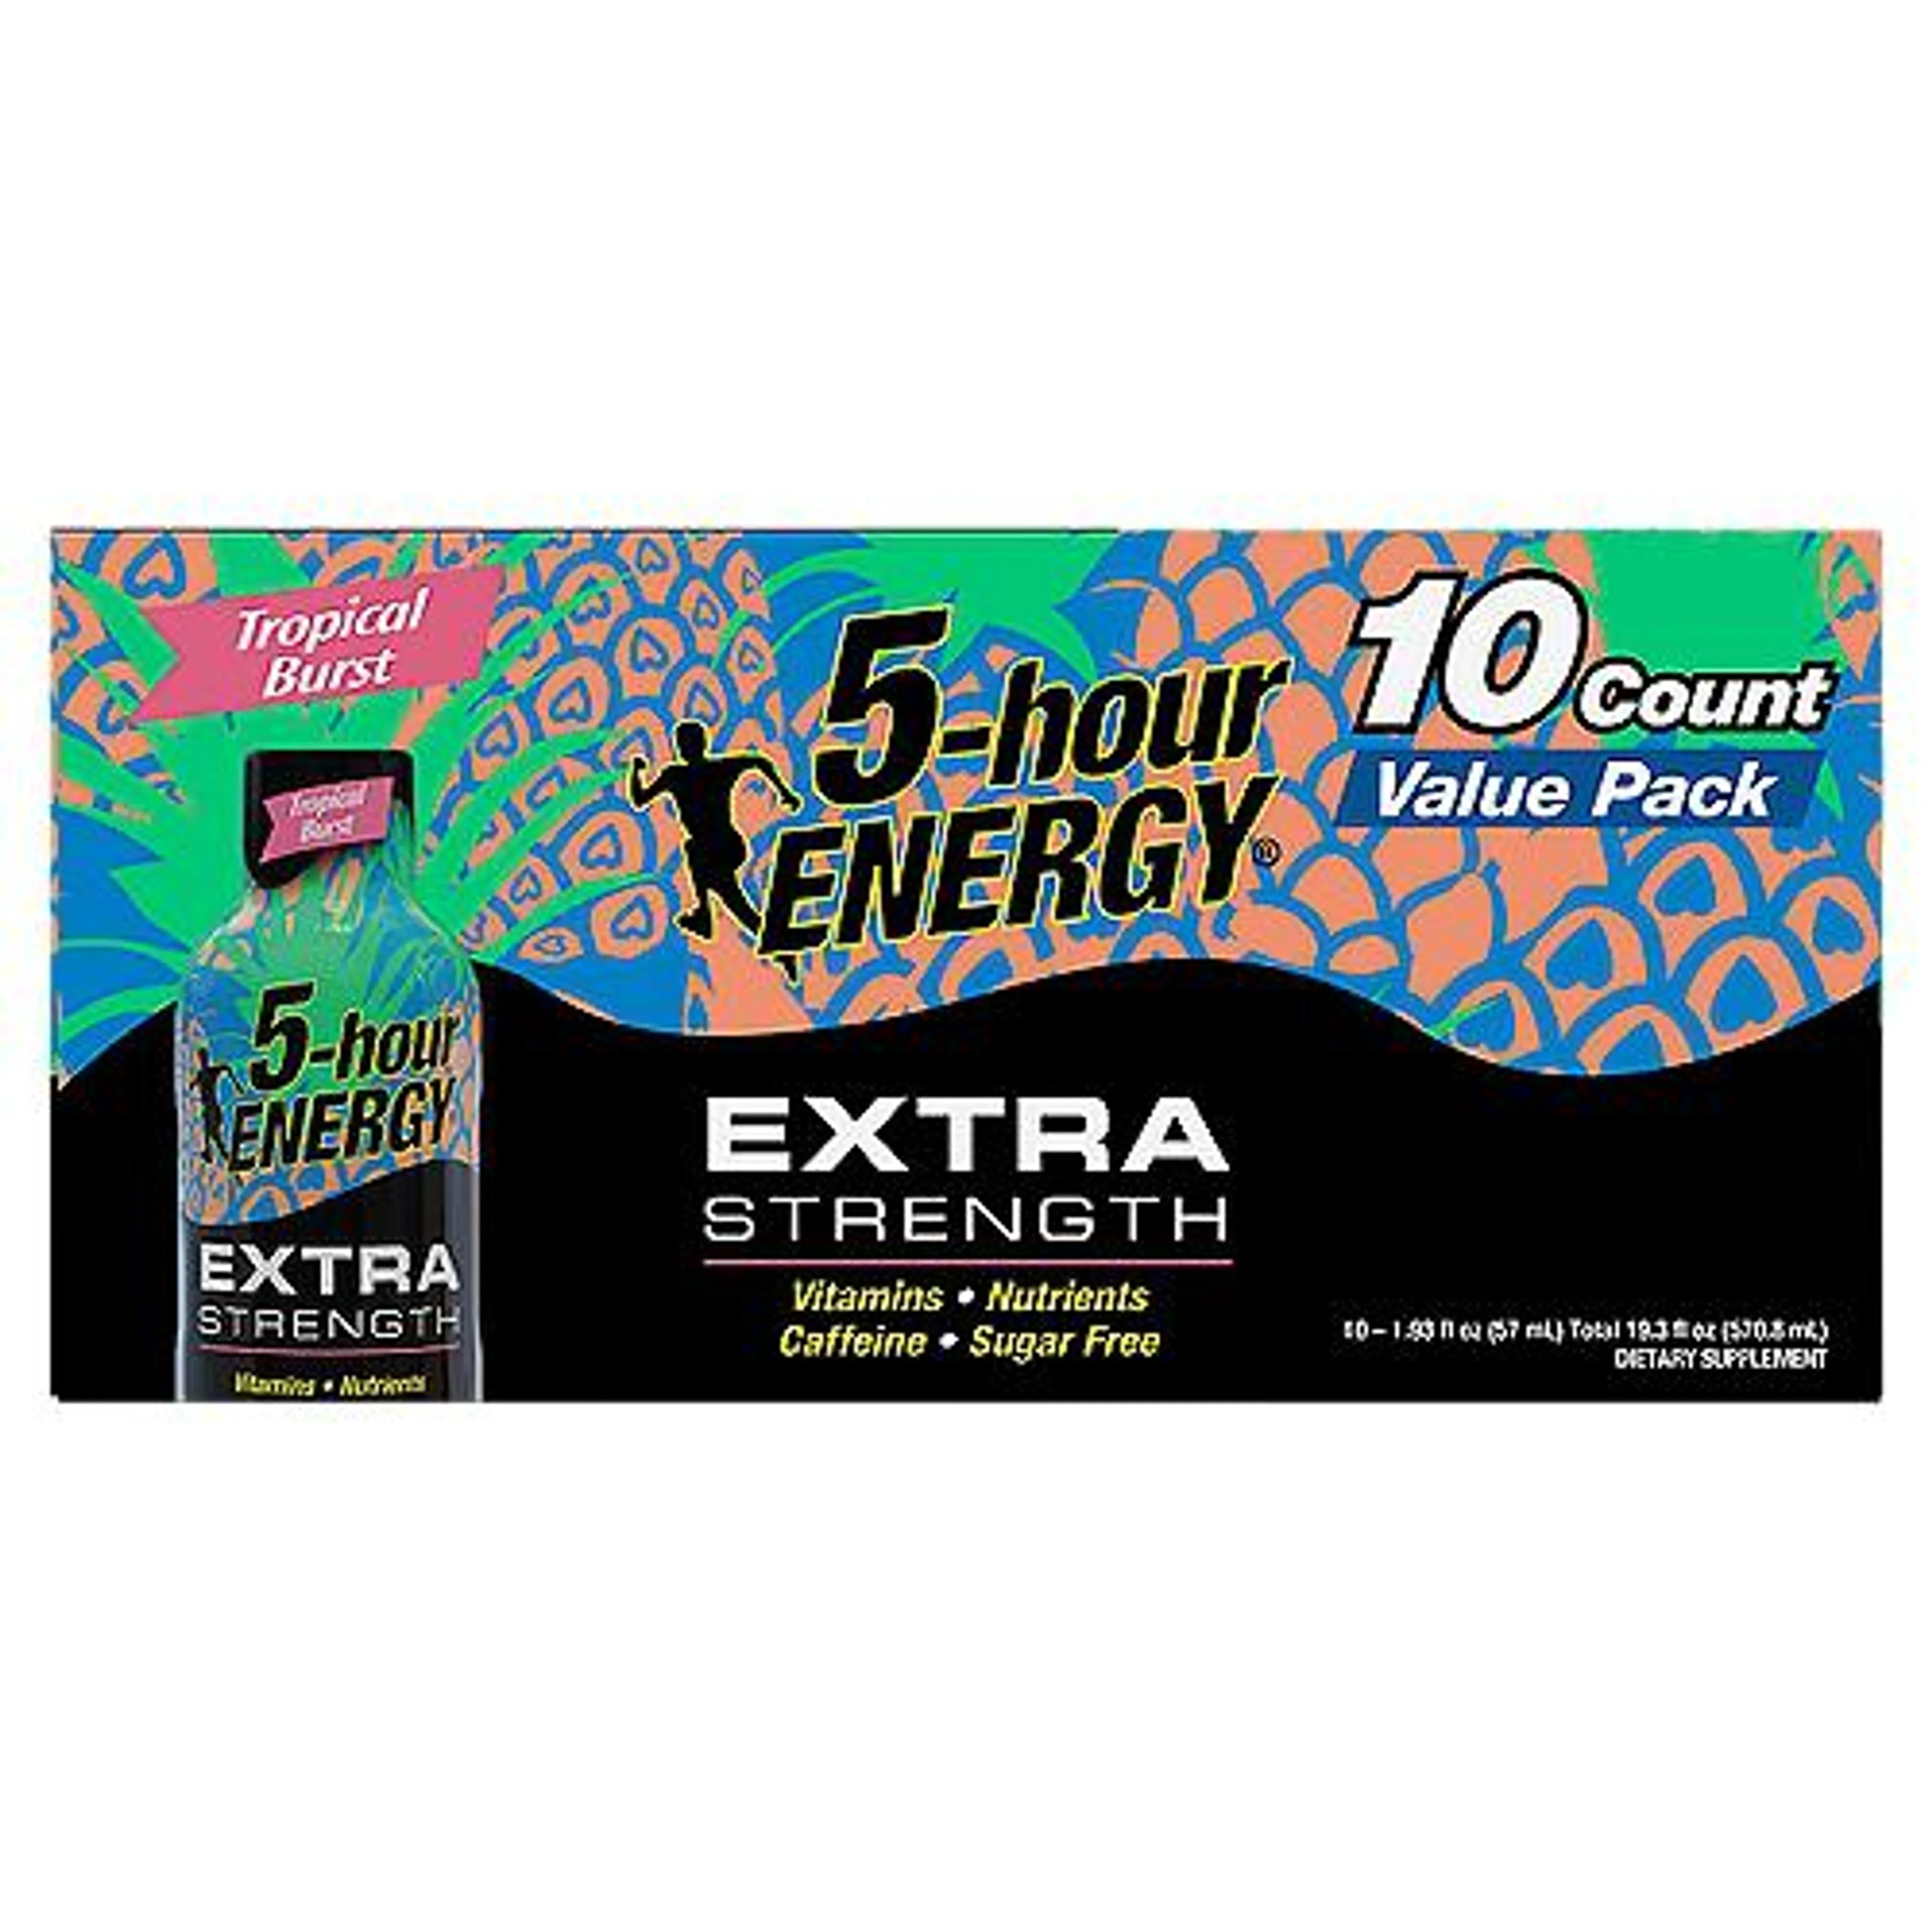 5-hour Energy Extra Strength Tropical Burst, Dietary Supplement, 19.3 Fluid ounce